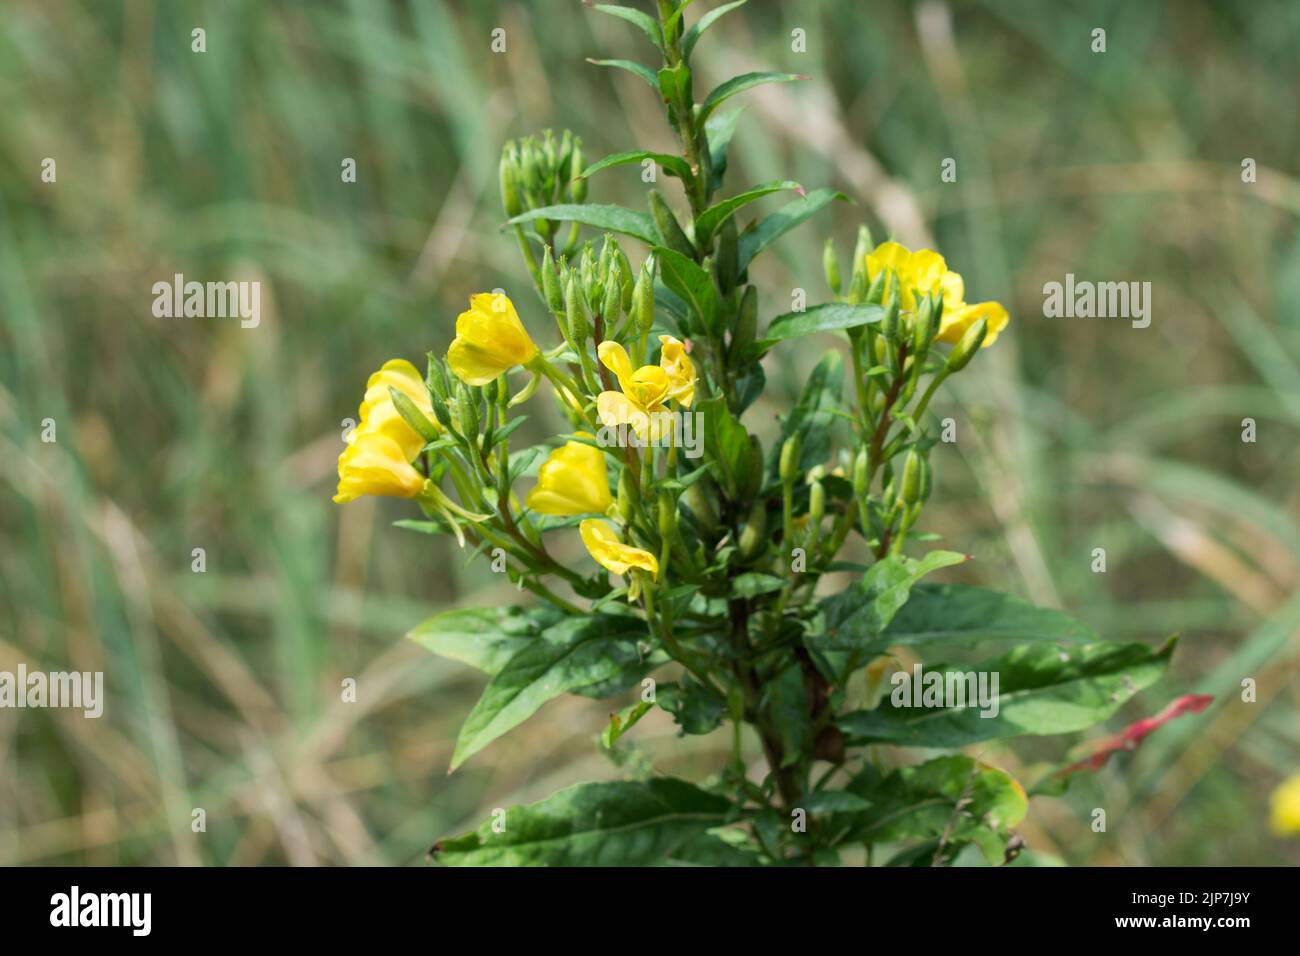 Oenothera biennis, común tarde-onagra flores amarillas primer plano enfoque selectivo Foto de stock